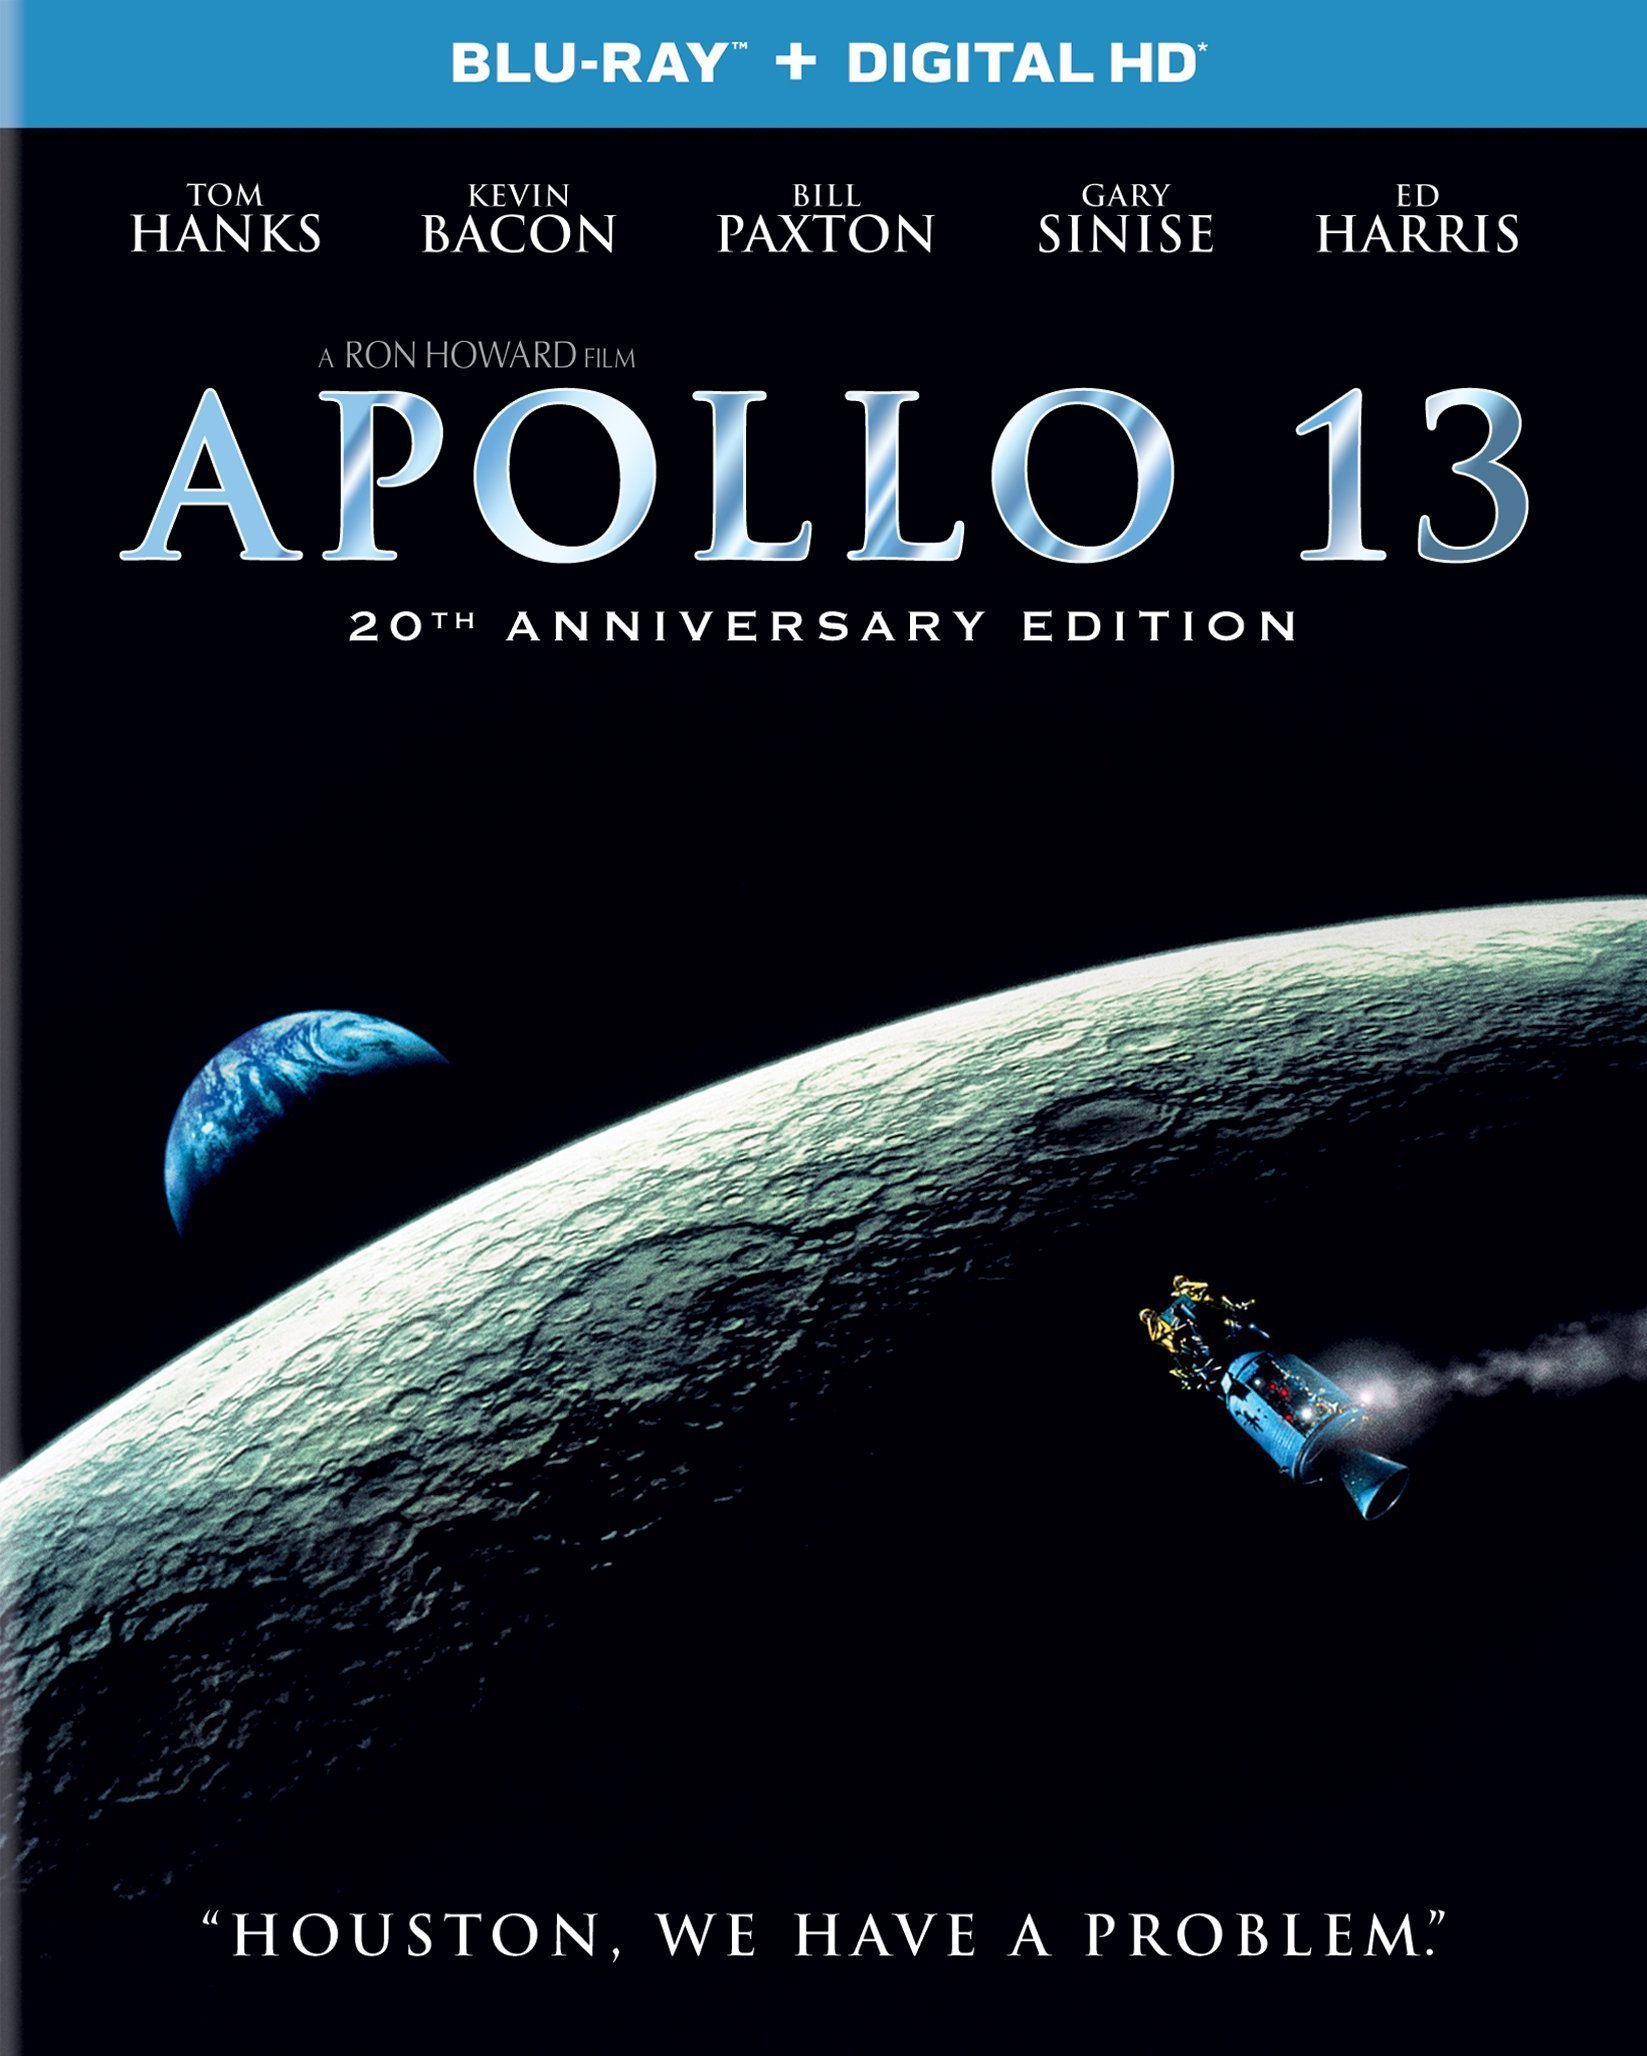 Apollo 18 2017 720p brrip x264 aac vision